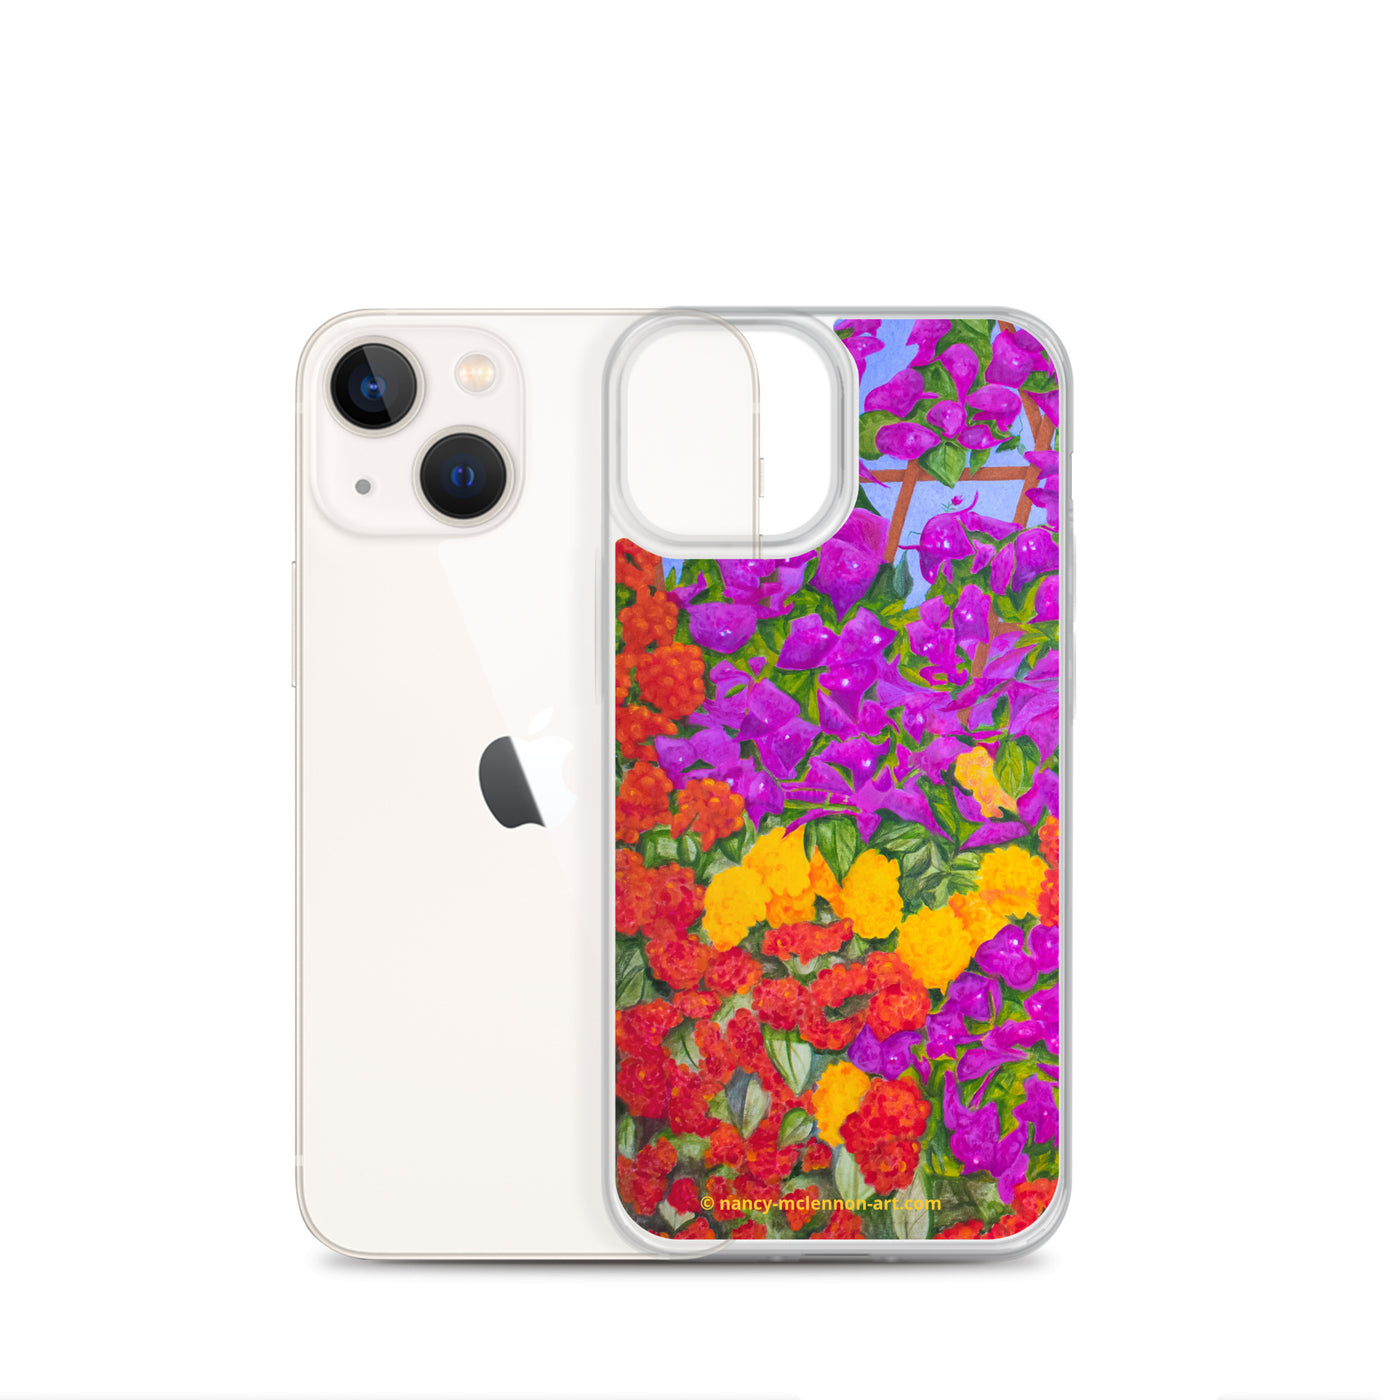 iPhone® Case - Garden of flowers